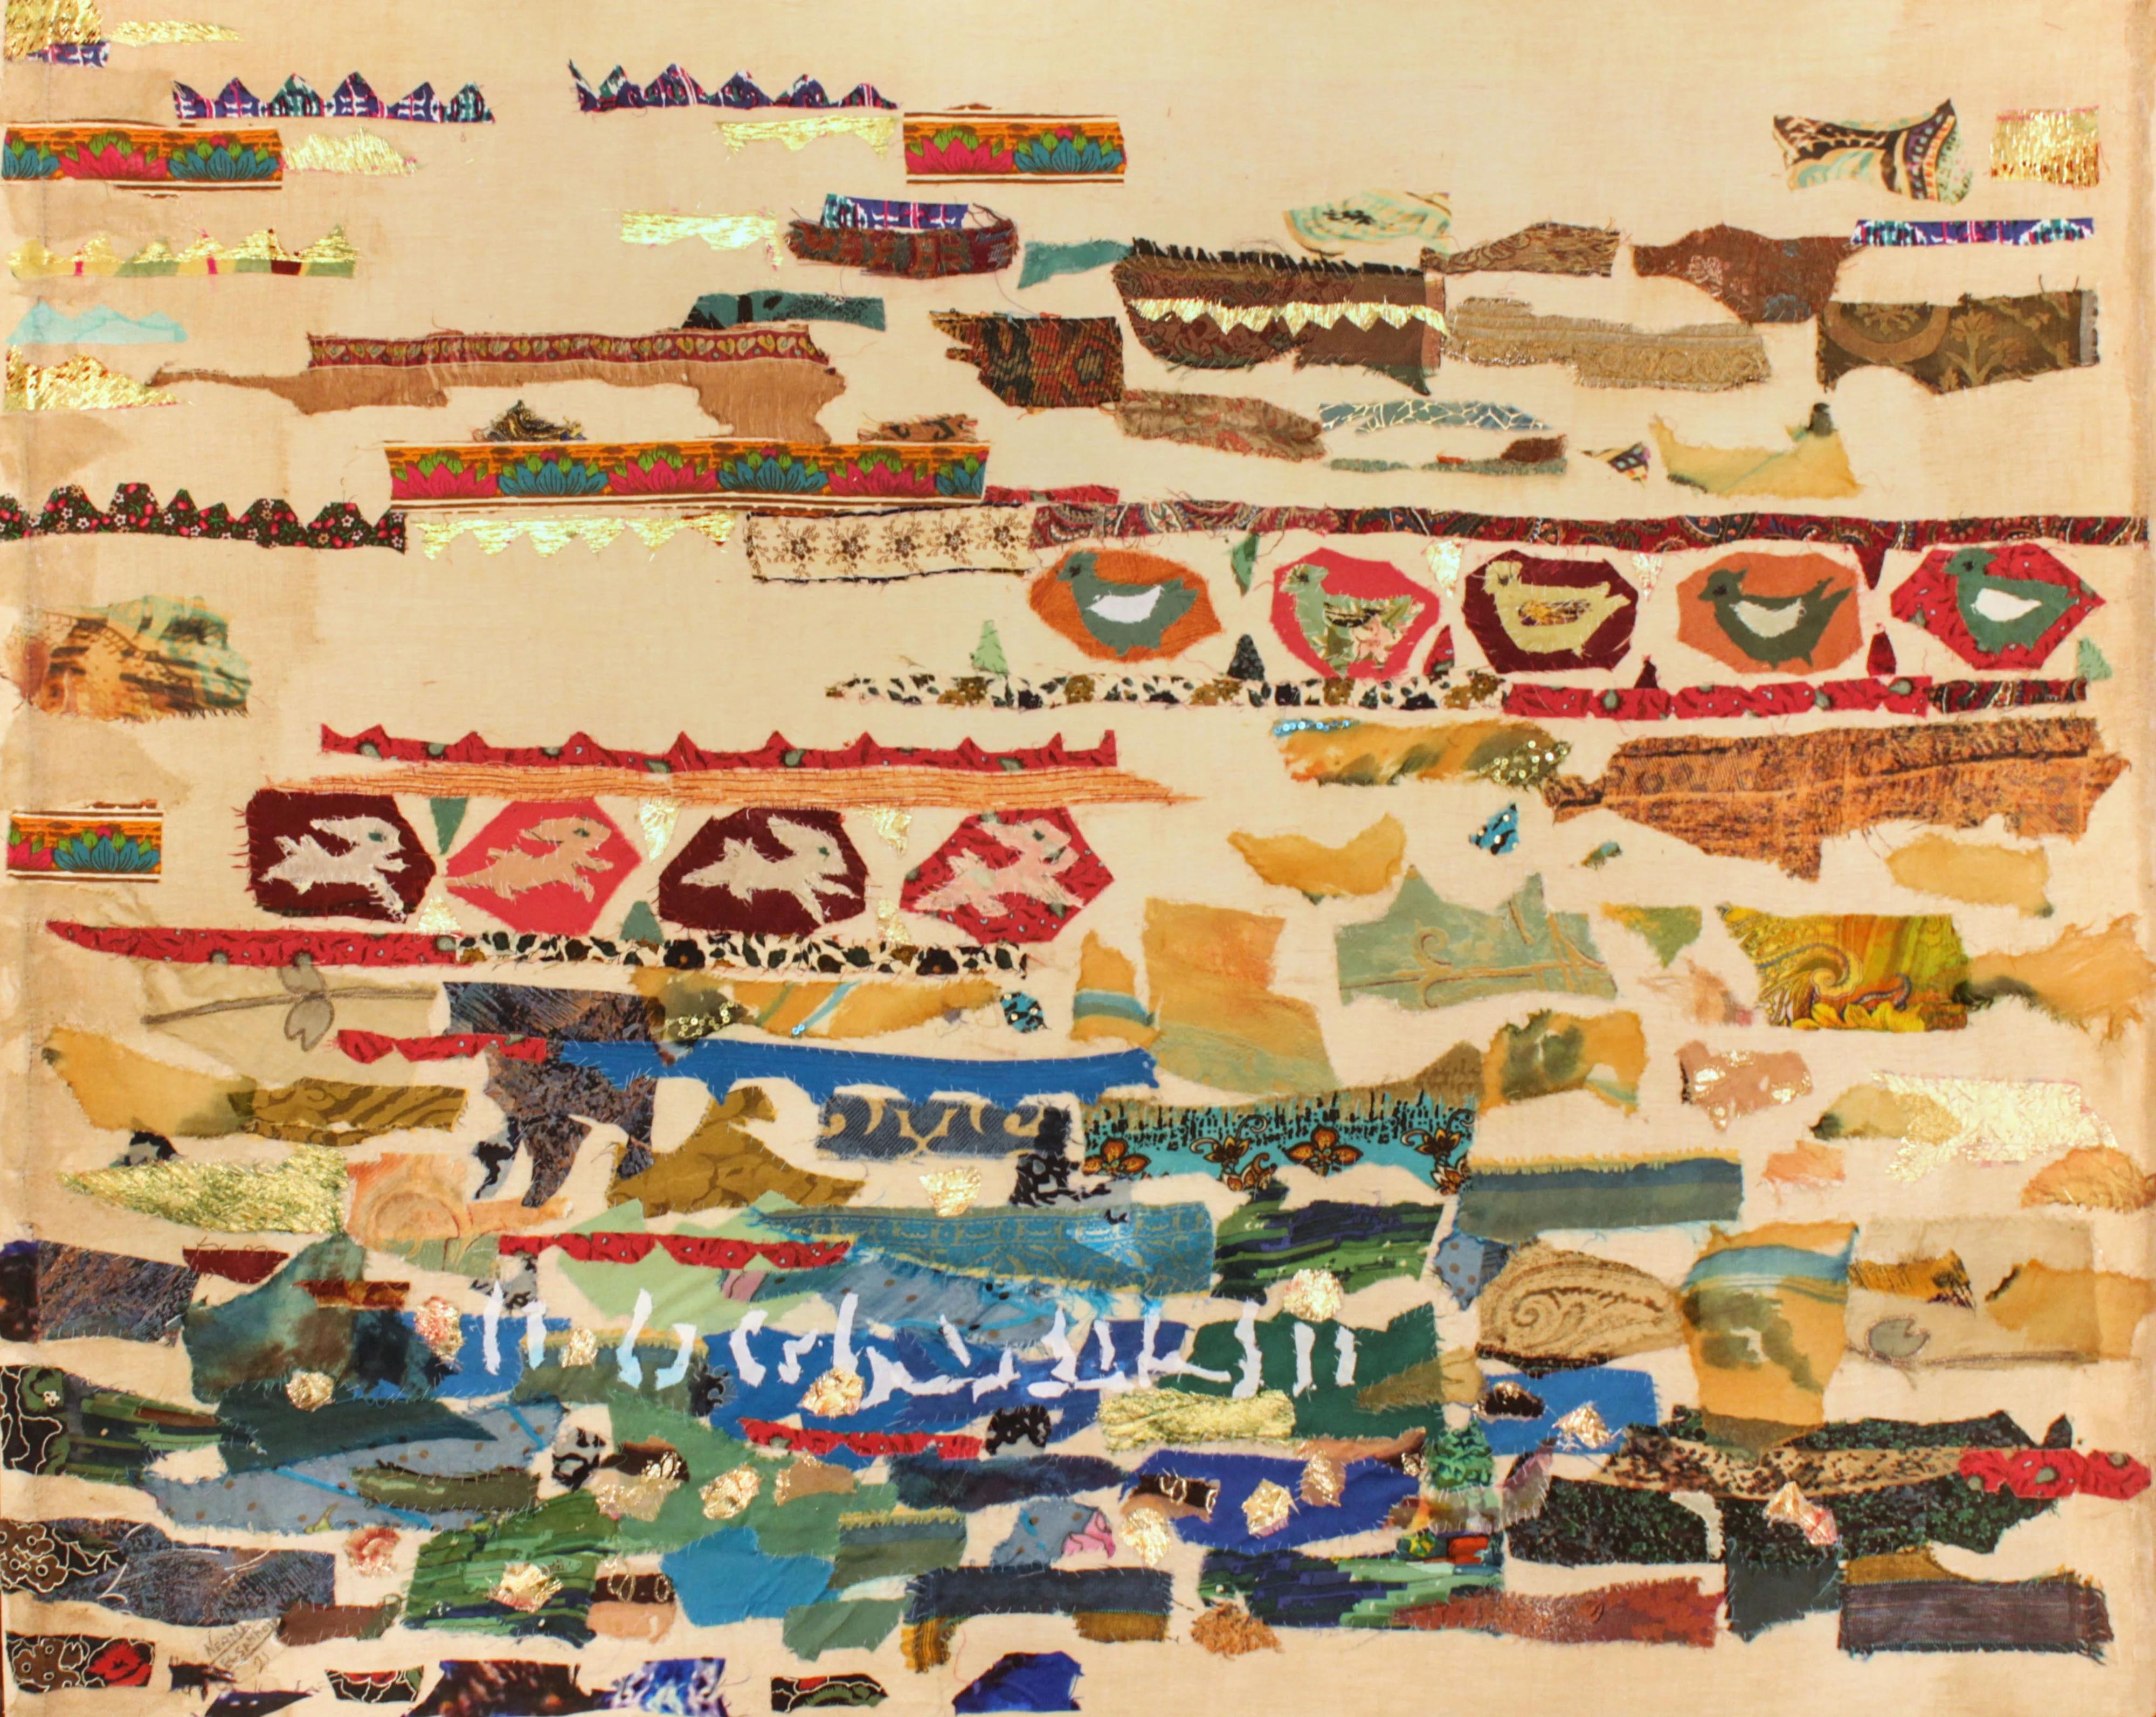 „Abstrakte Melange I“ Abstrakte Collage 35" x 39" Zoll von Neama El Sanhoury

Stoffcollage auf Leinen auf Holz

KÜNSTLER BIO
Neama El Sanhourys Aufwachsen in einem, wie sie es nennt, kultivierten Haushalt hat vor allem dazu geführt, dass sie den